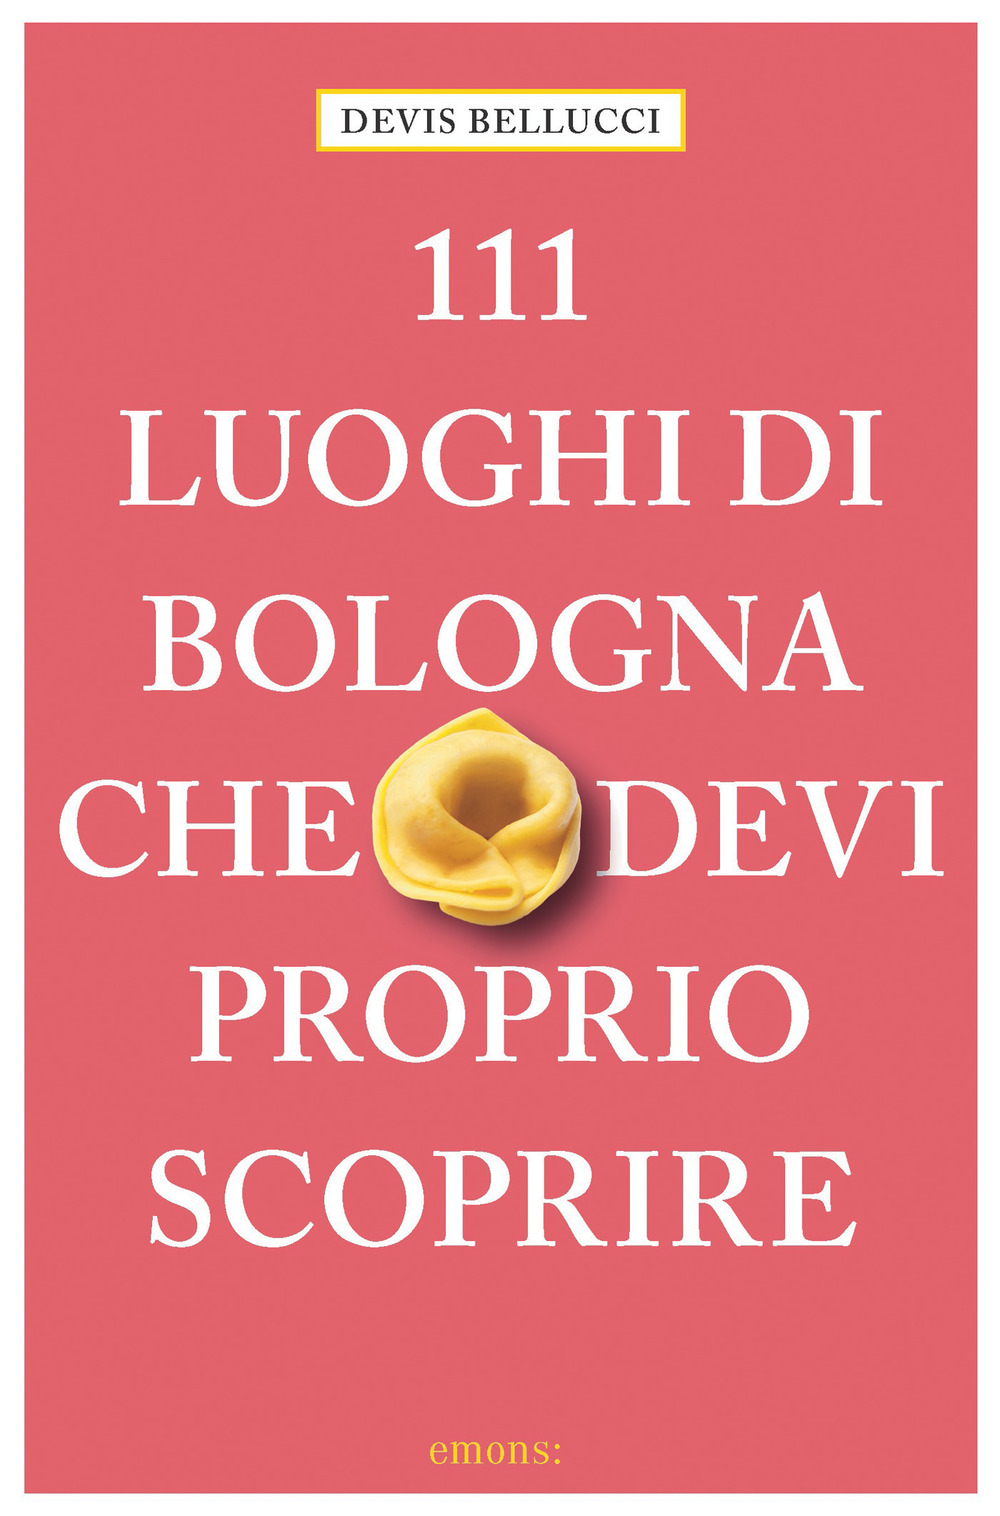 111 LUOGHI DI BOLOGNA CHE DEVI PROPRIO SCOPRIRE - 9783740811068